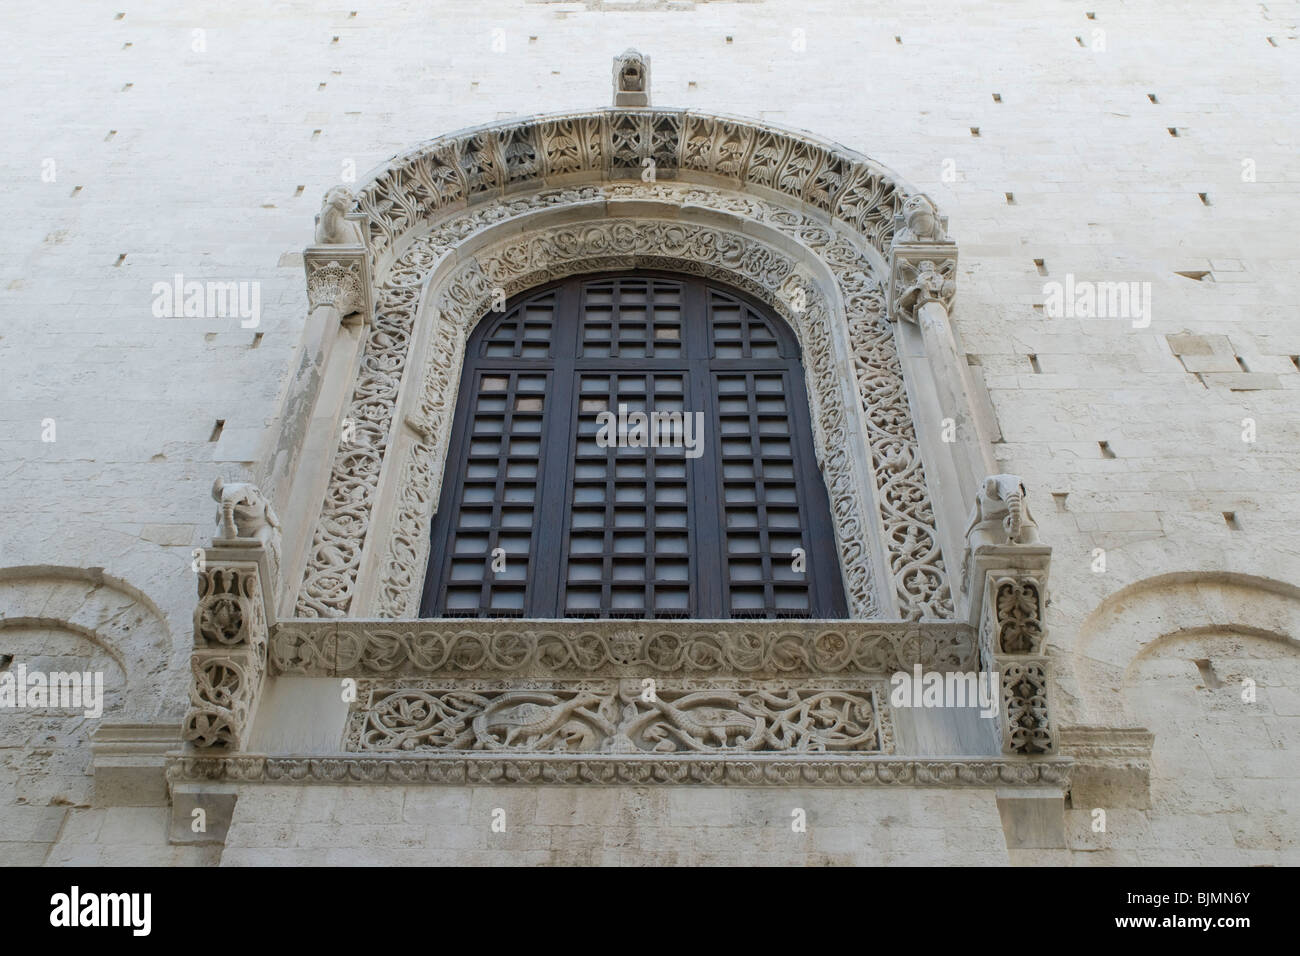 Italien, Apulien, Bari, Kathedrale, romanisches Fenster | Italie, Pouilles, Bari, cathédrale, fenêtre romane Banque D'Images